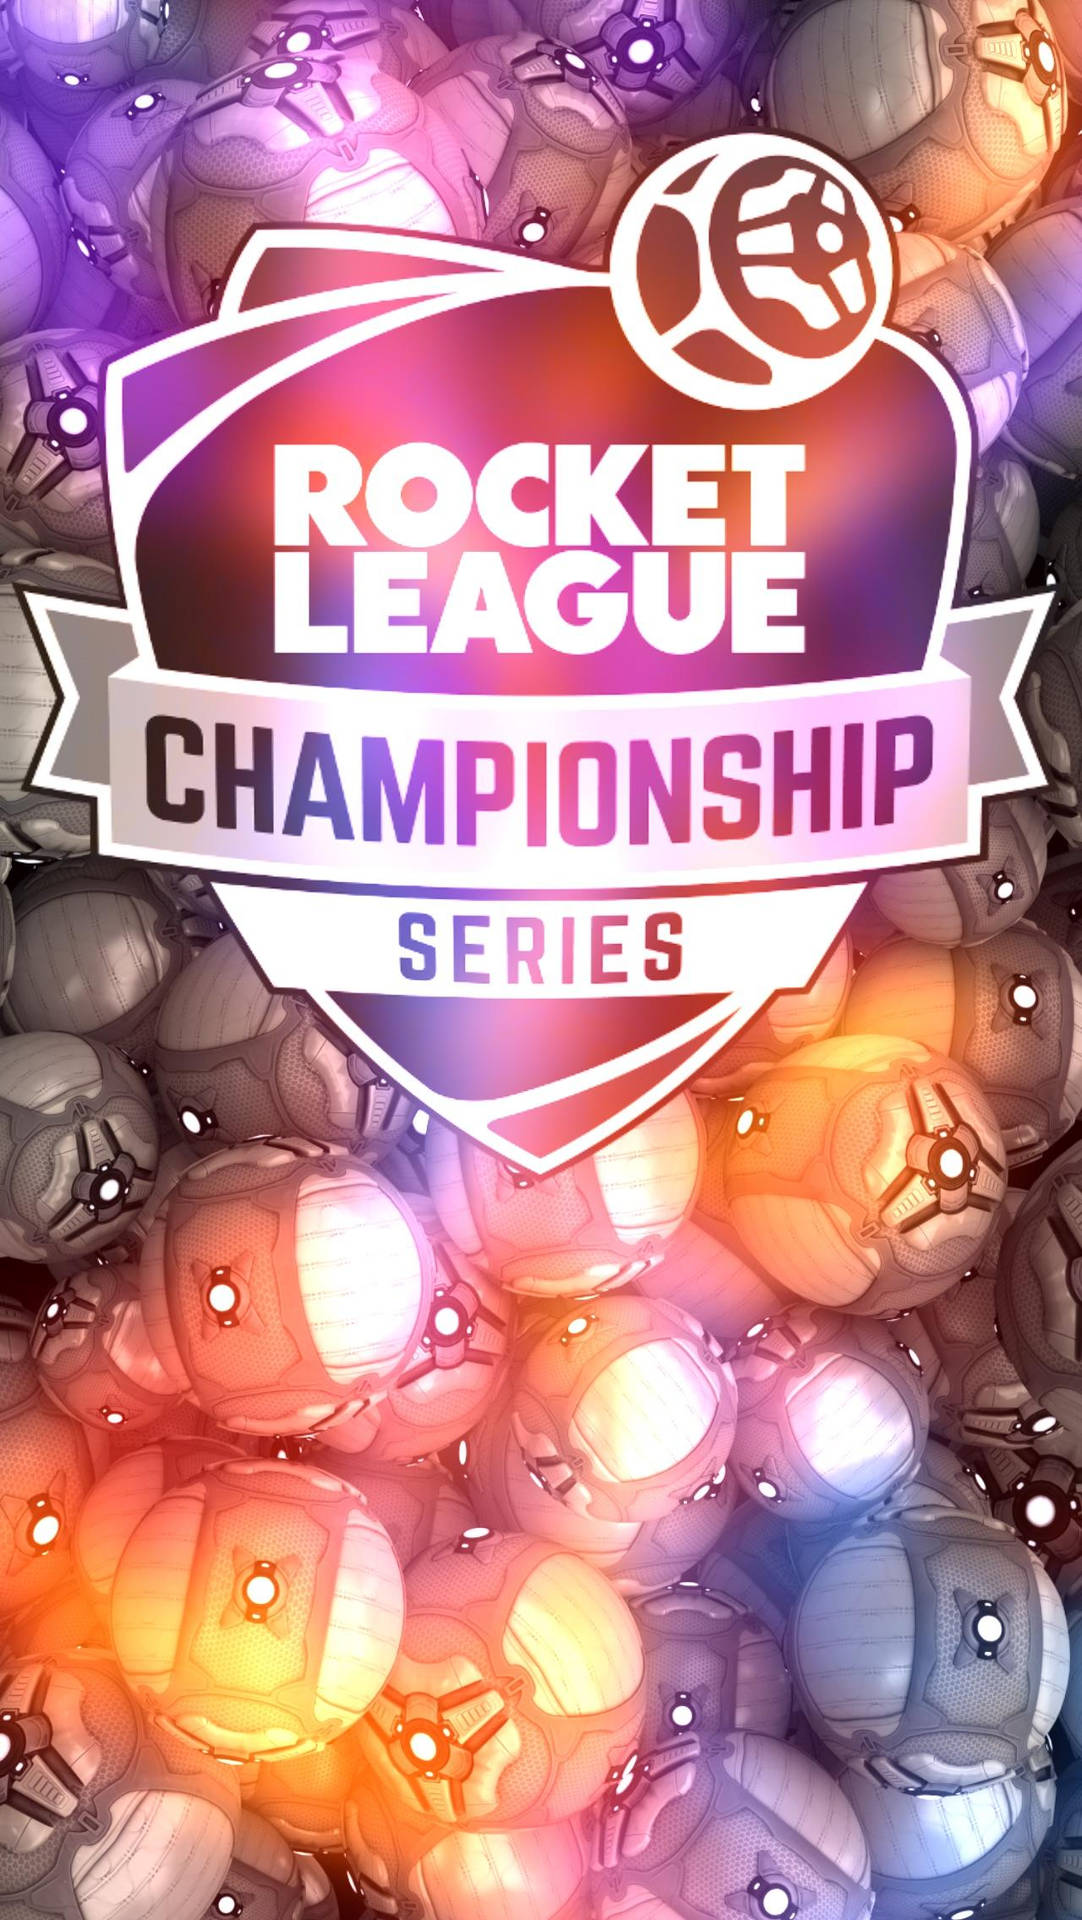 Rocketleague Championship Series - (raketbils-mästerskapet) Wallpaper